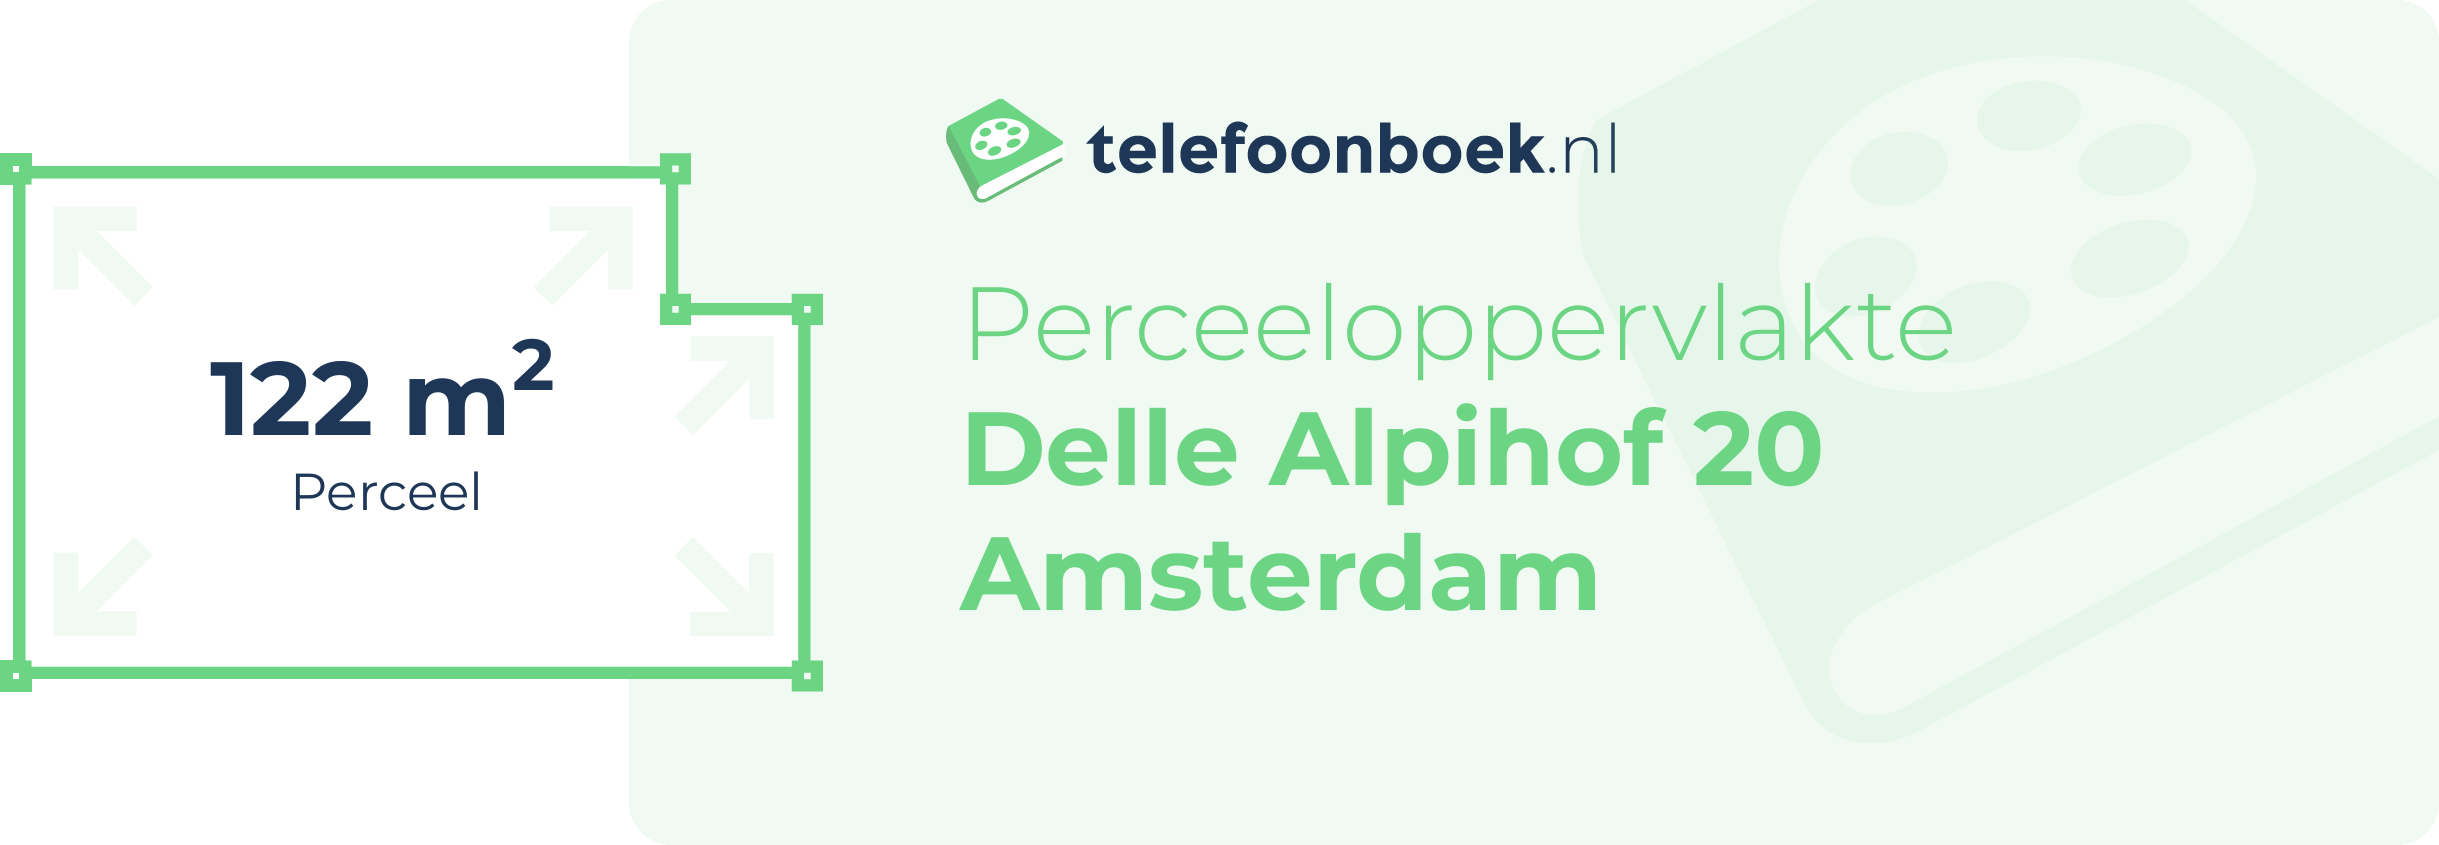 Perceeloppervlakte Delle Alpihof 20 Amsterdam